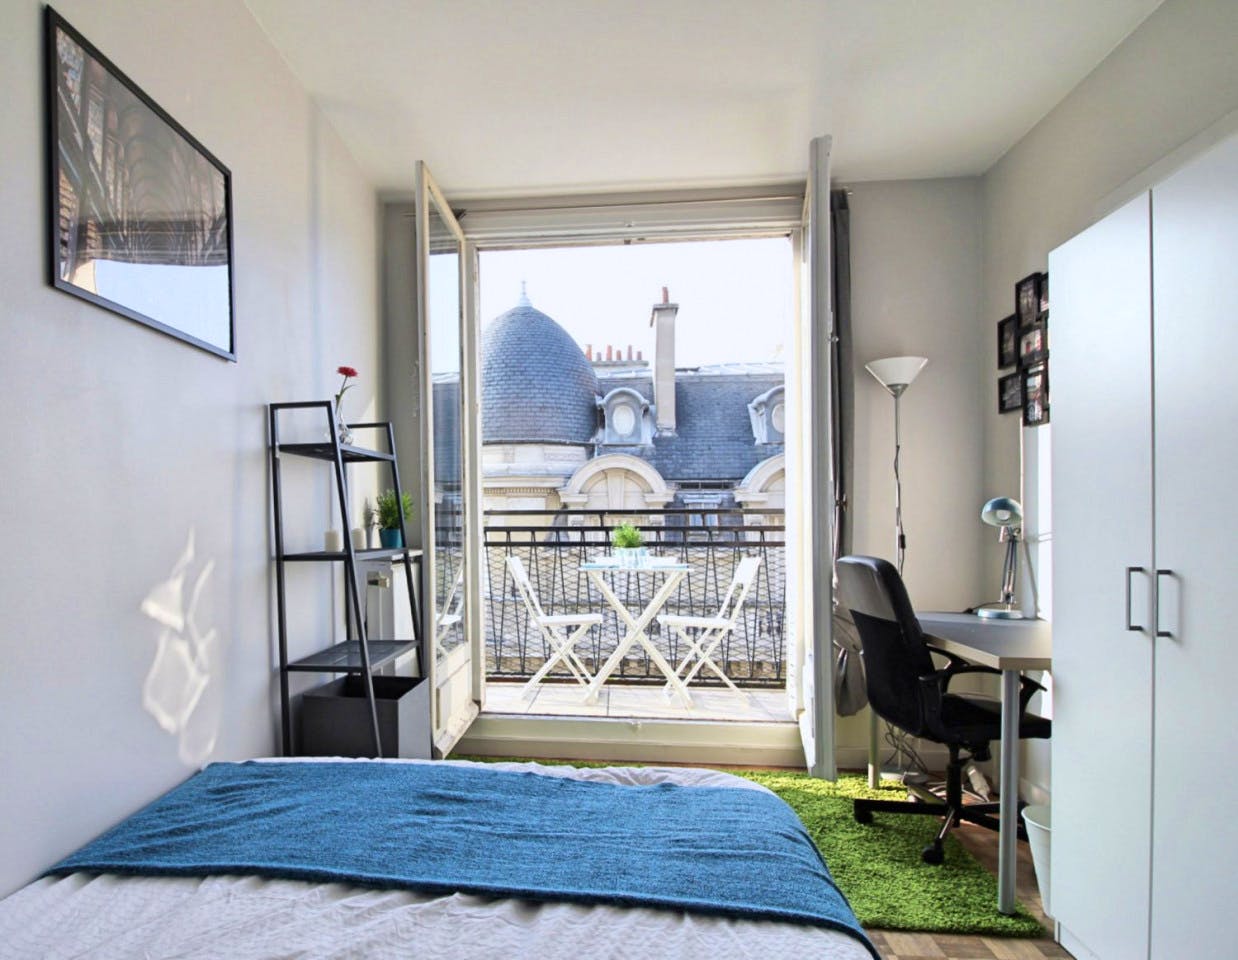 Superb apartment located near the Champs-Élysées